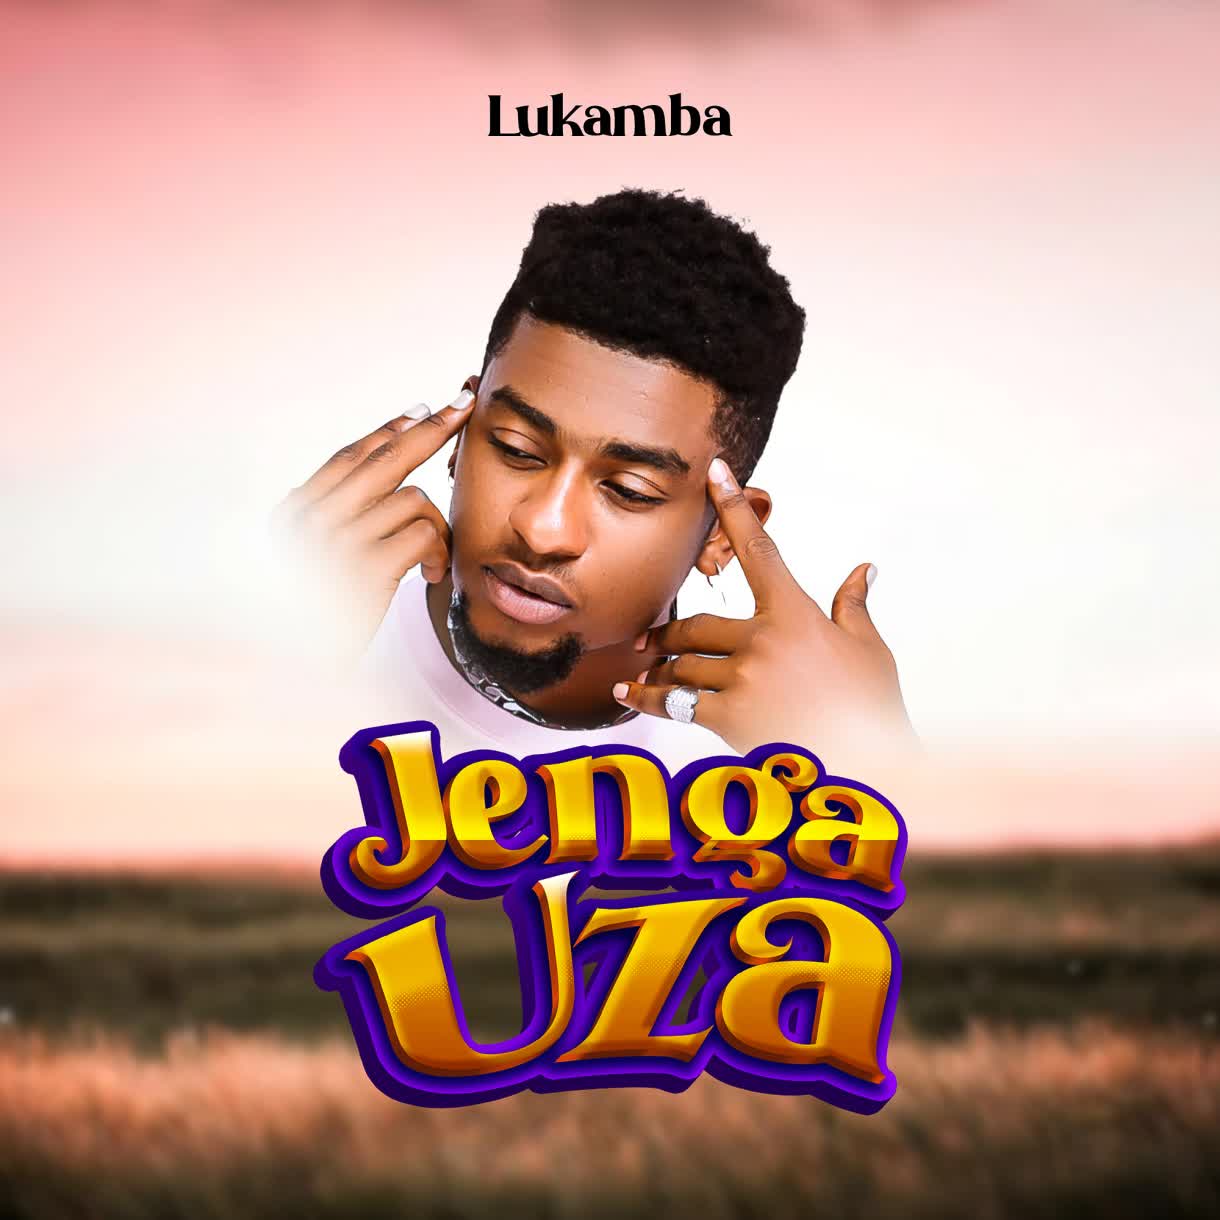 Lukamba – Jenga Uza MP3 DOWNLOAD